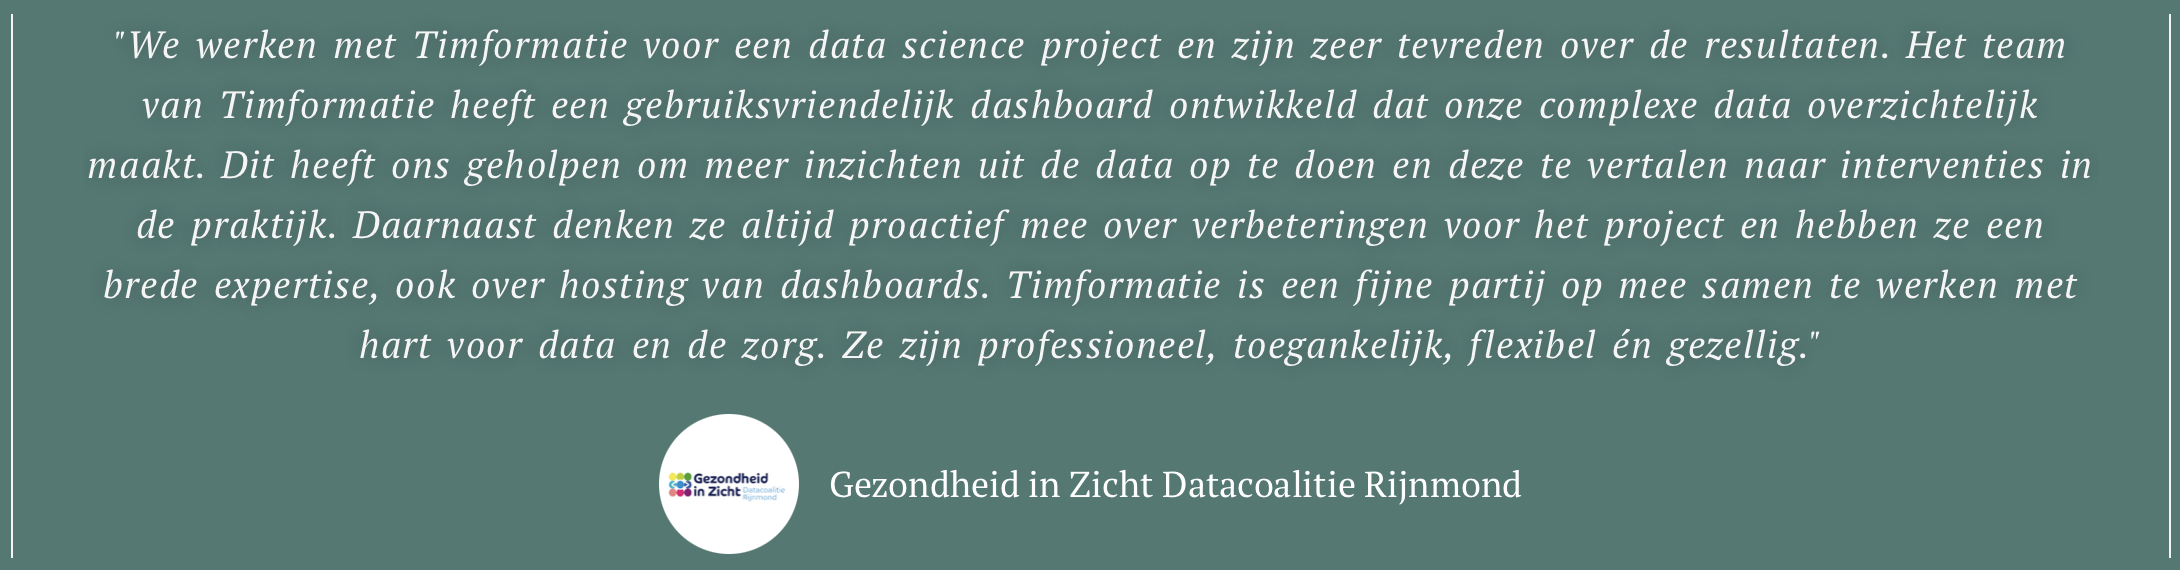 Recensie Gezondheid in Zicht Datacoalitie Rijnmond